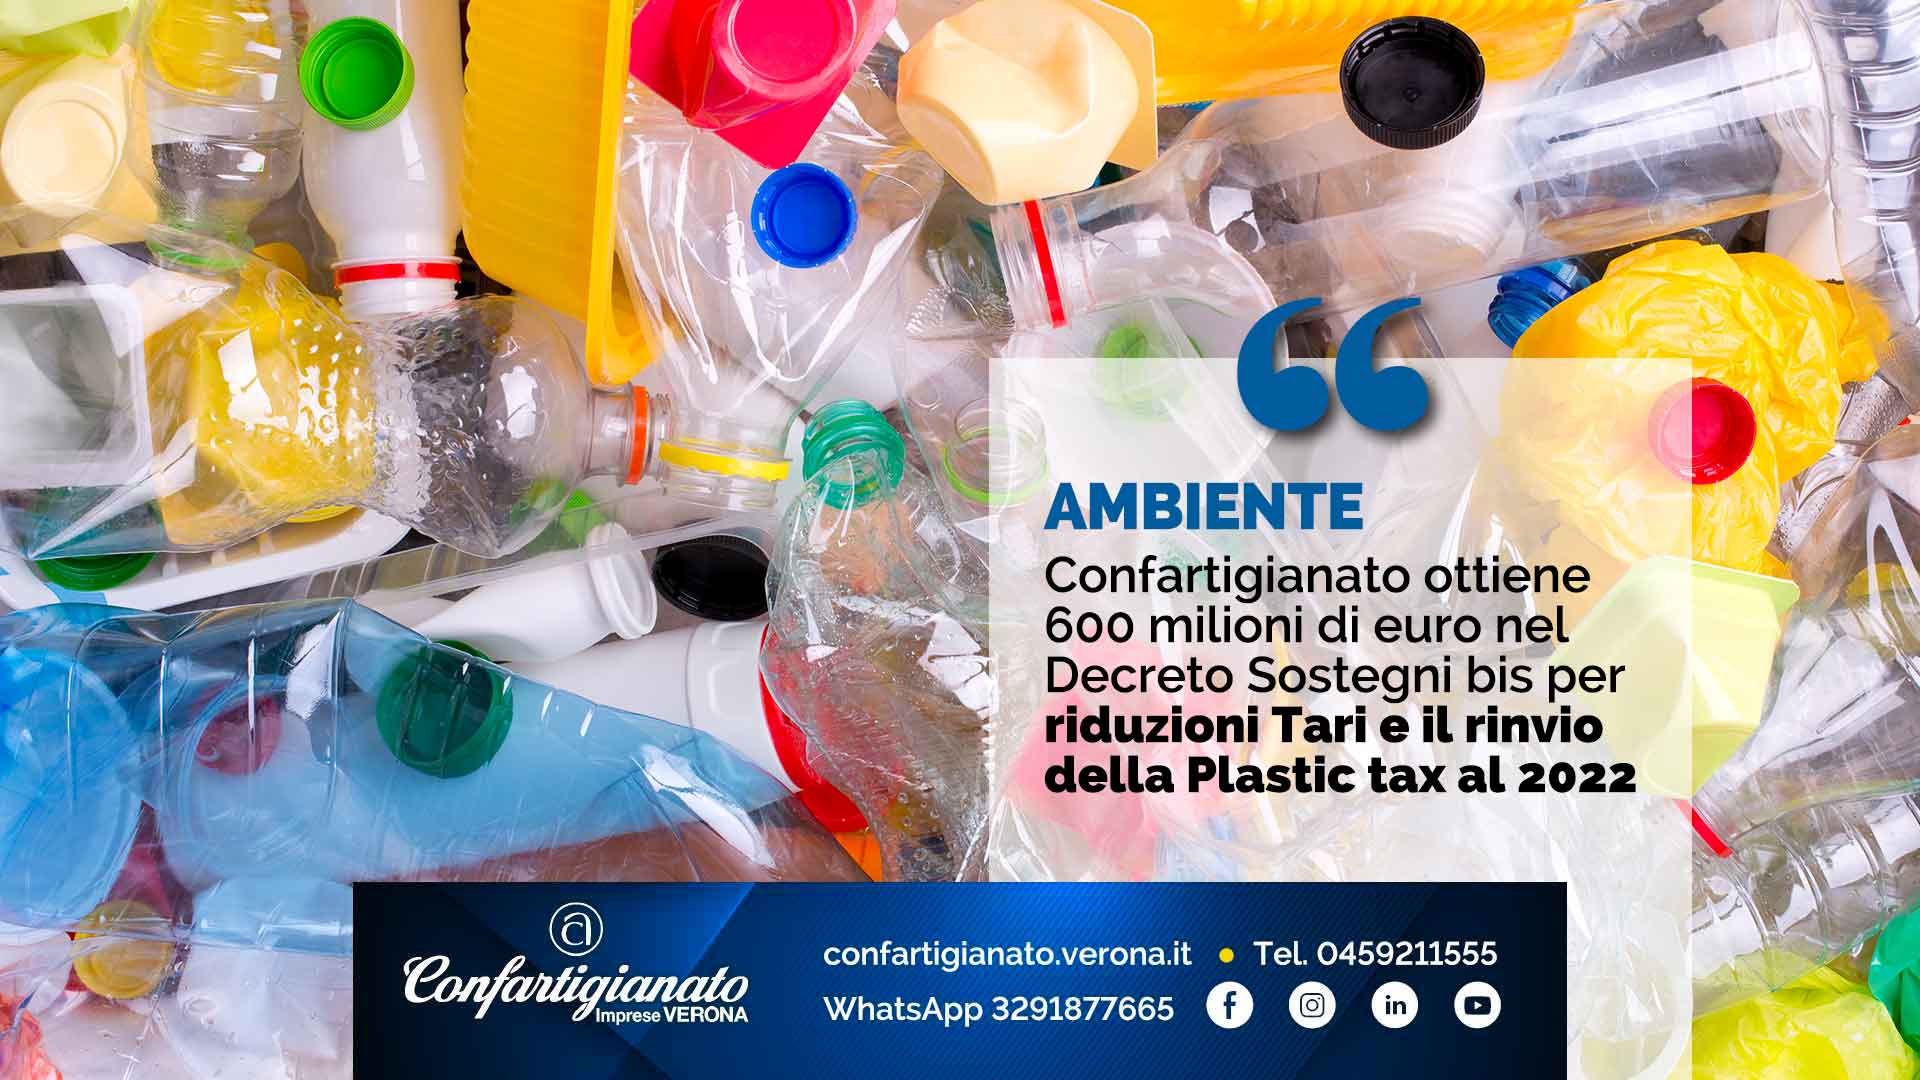 AMBIENTE – Nel Decreto Sostegni bis Confartigianato ottiene 600 milioni di euro per riduzioni Tari e il rinvio della Plastic tax al 2022